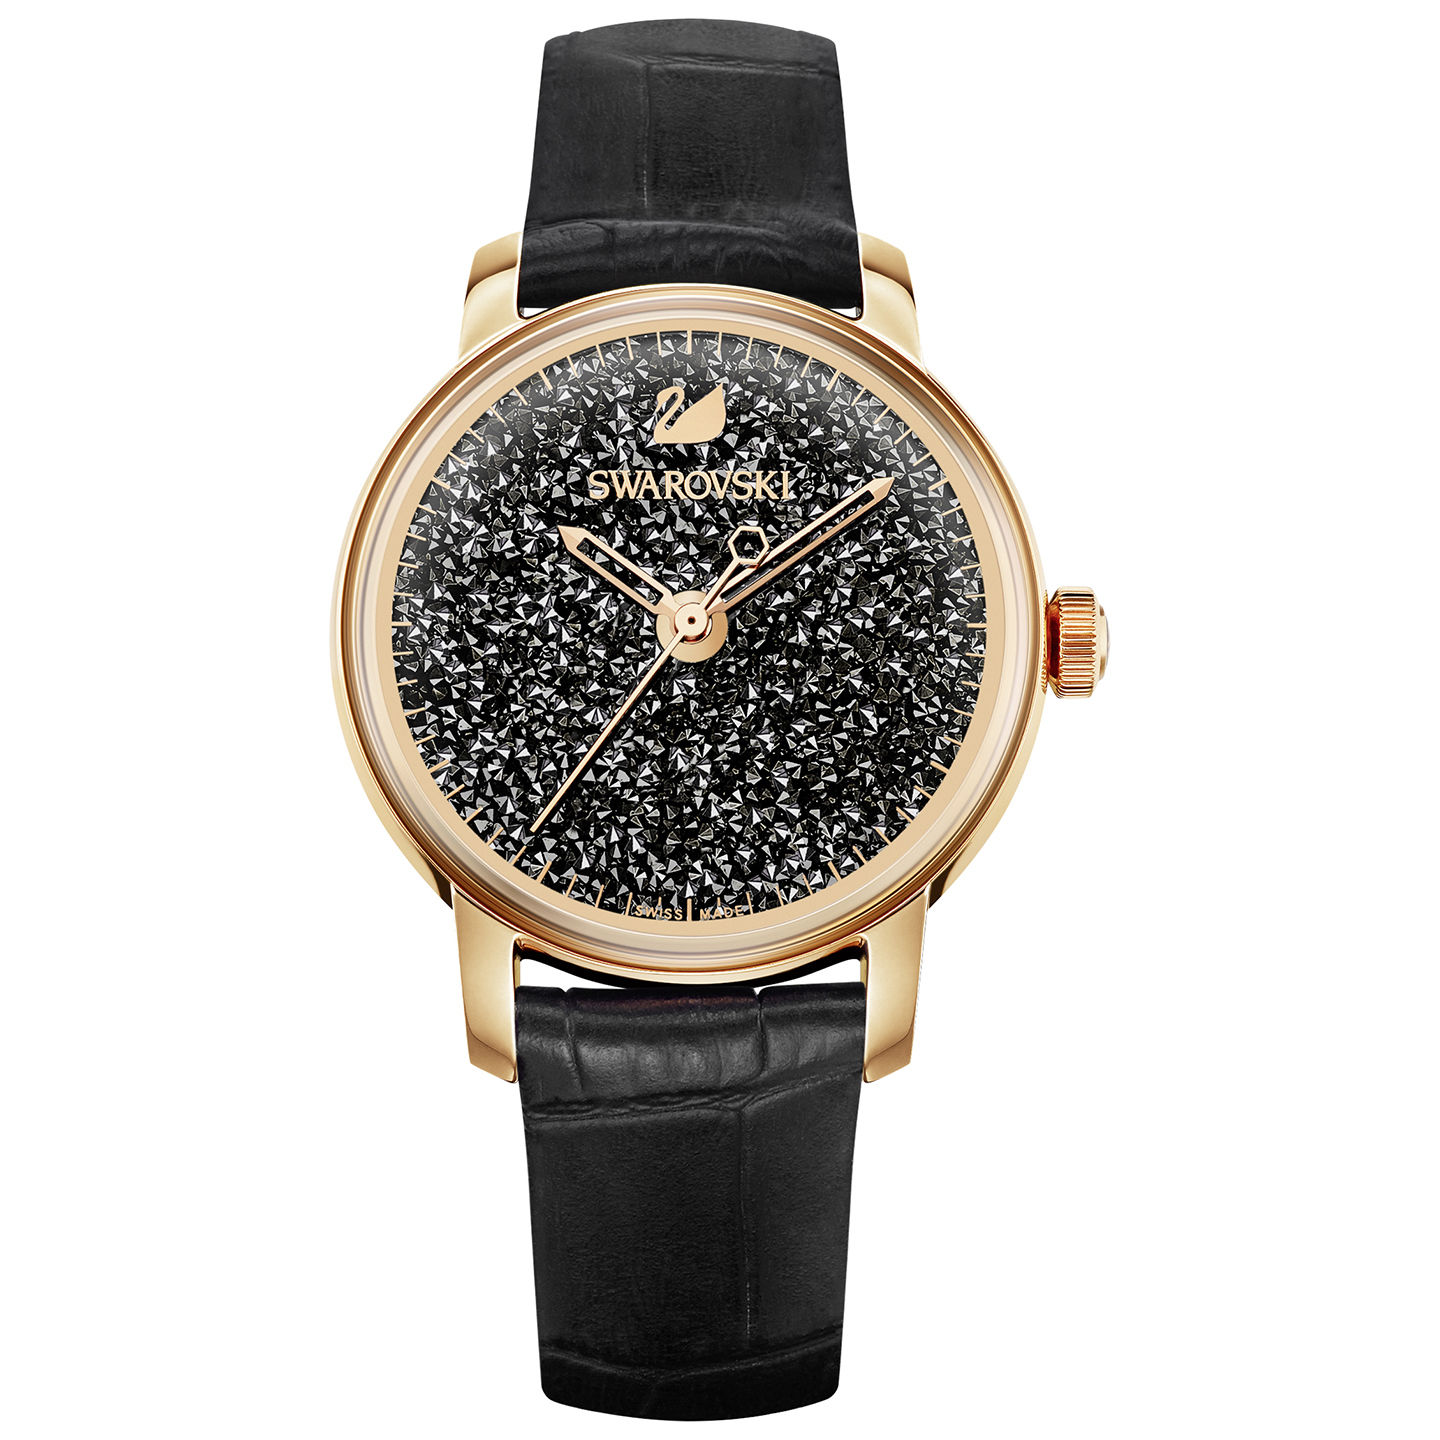 Swarovski : Les plus belles montres pour femme récemment vendues sur eBay